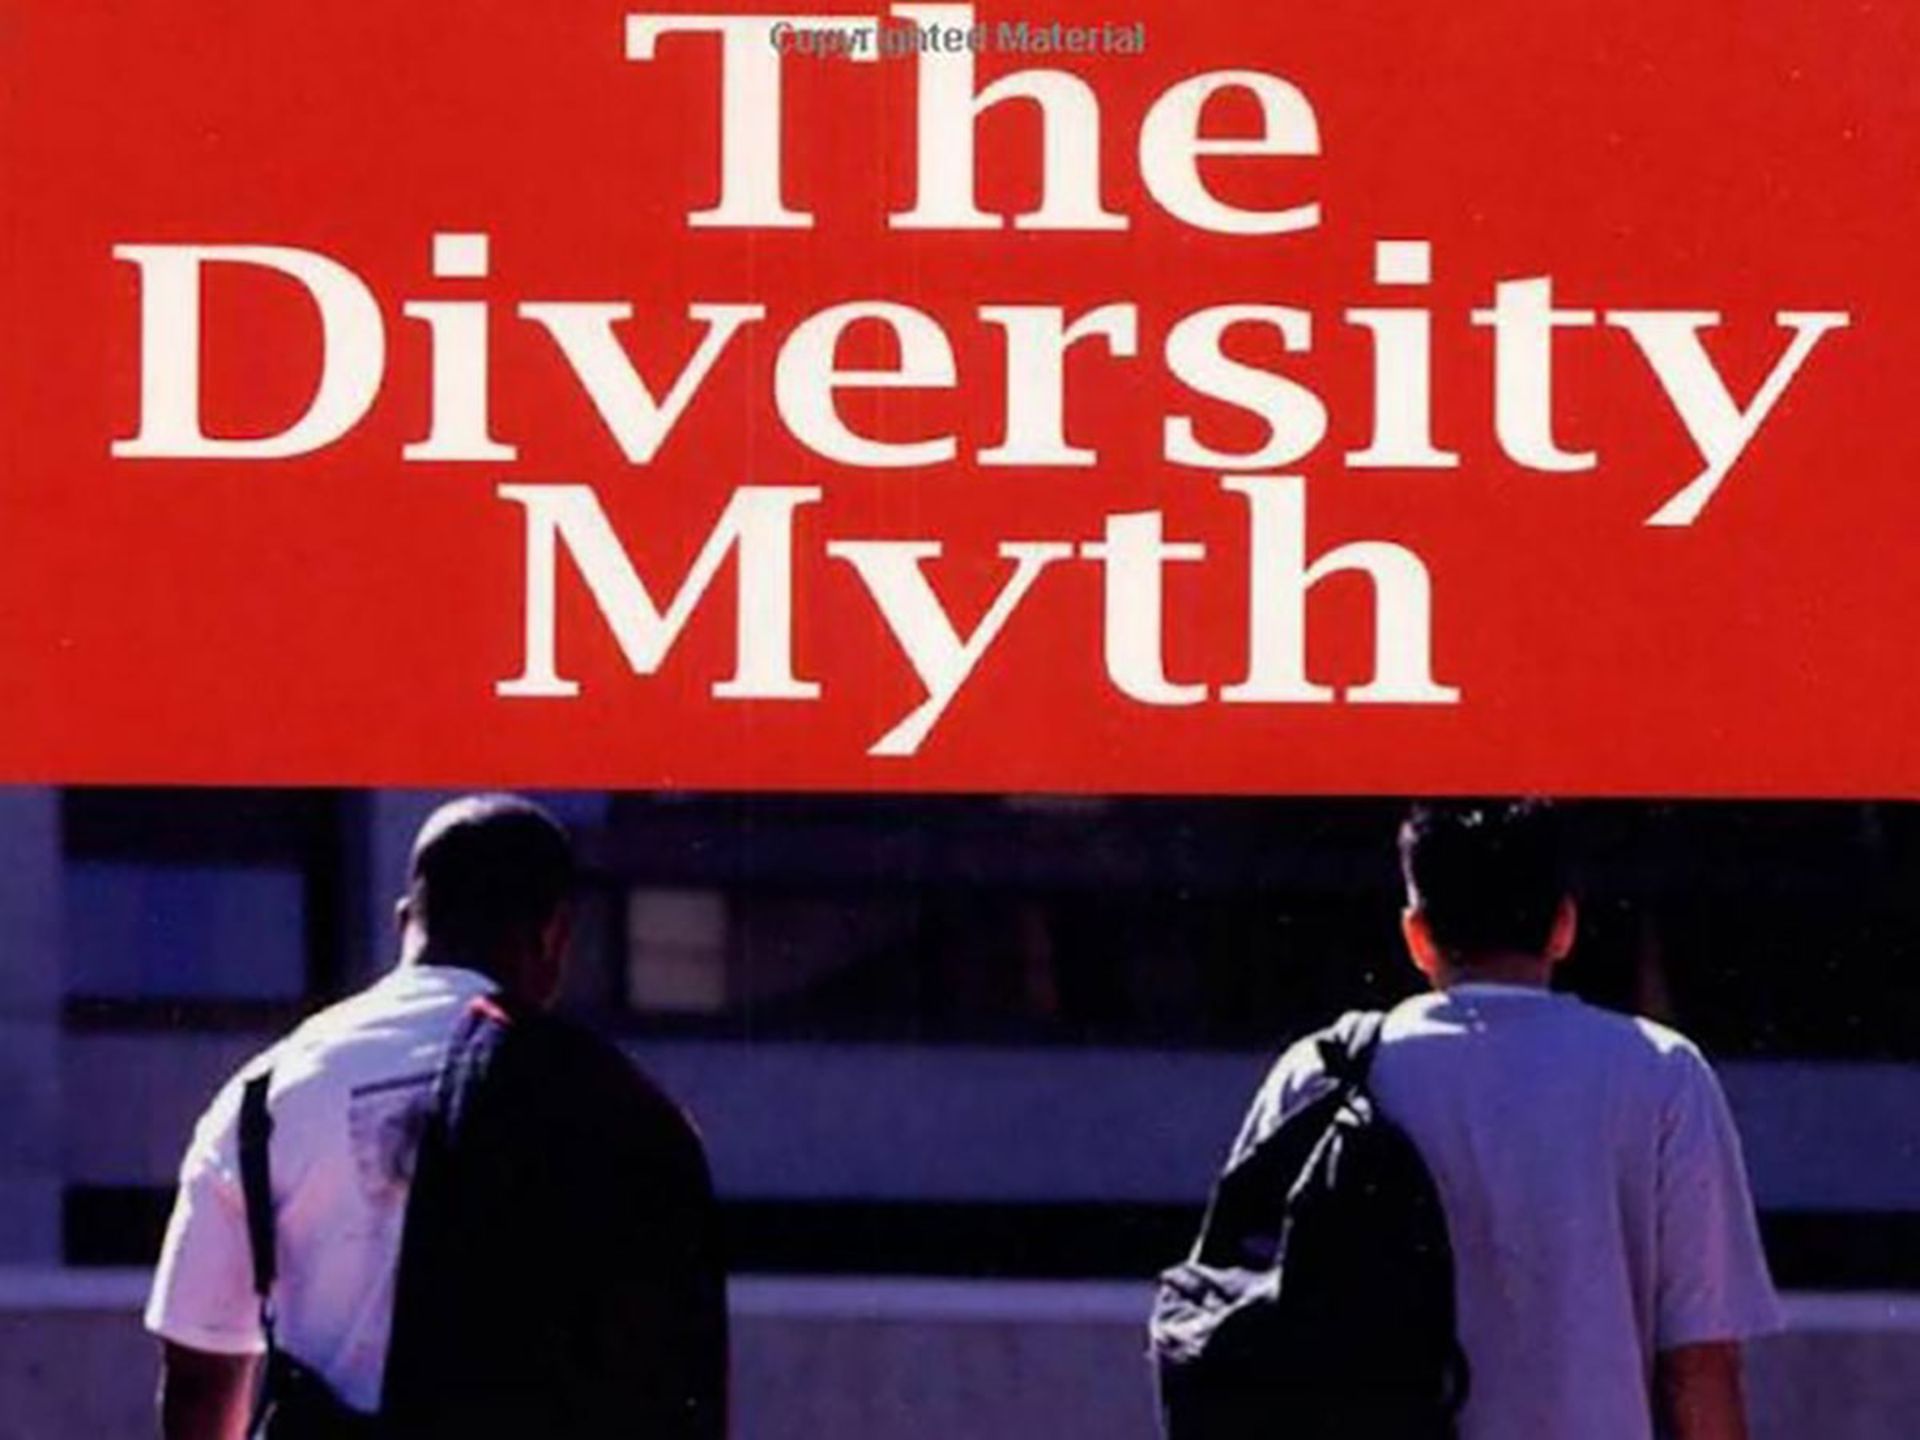 مرجع متخصصين ايران The Diversity Myth